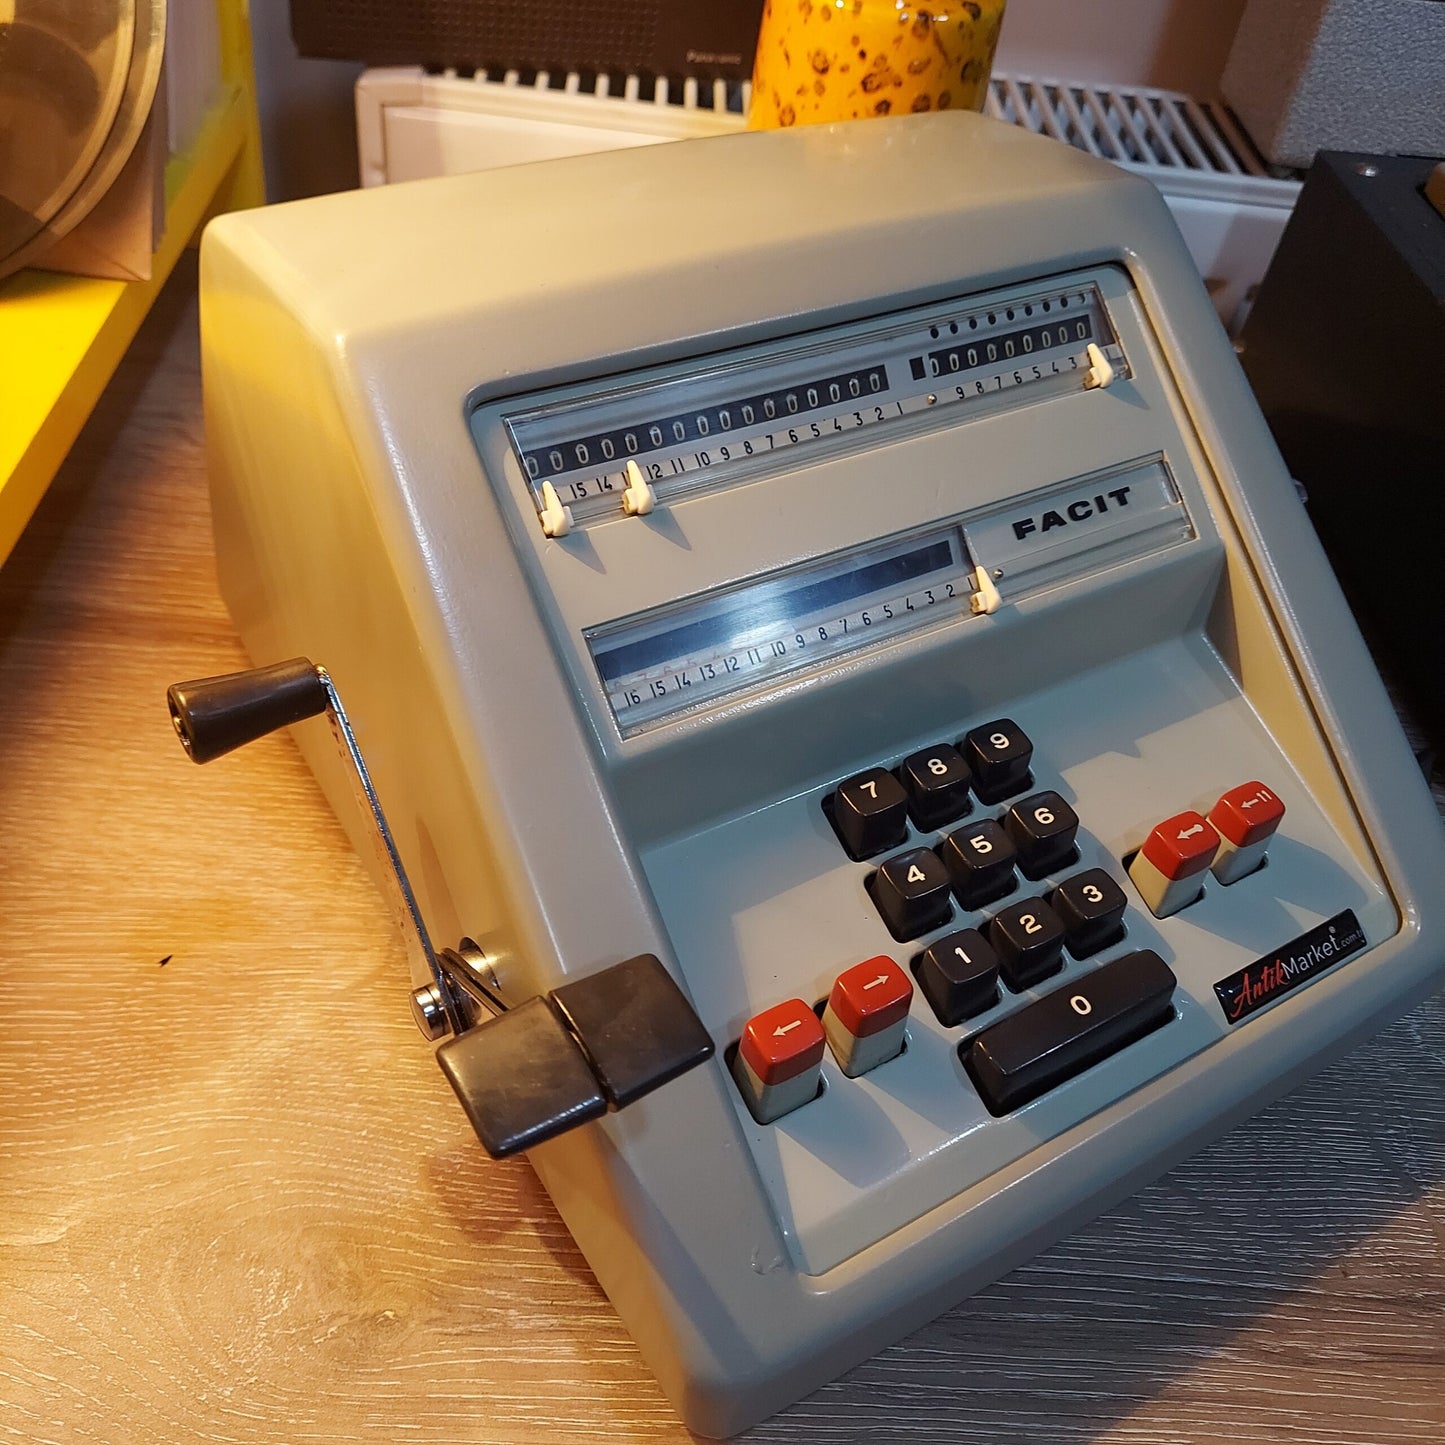 Big case Facit Antique Calculator from 1959-67